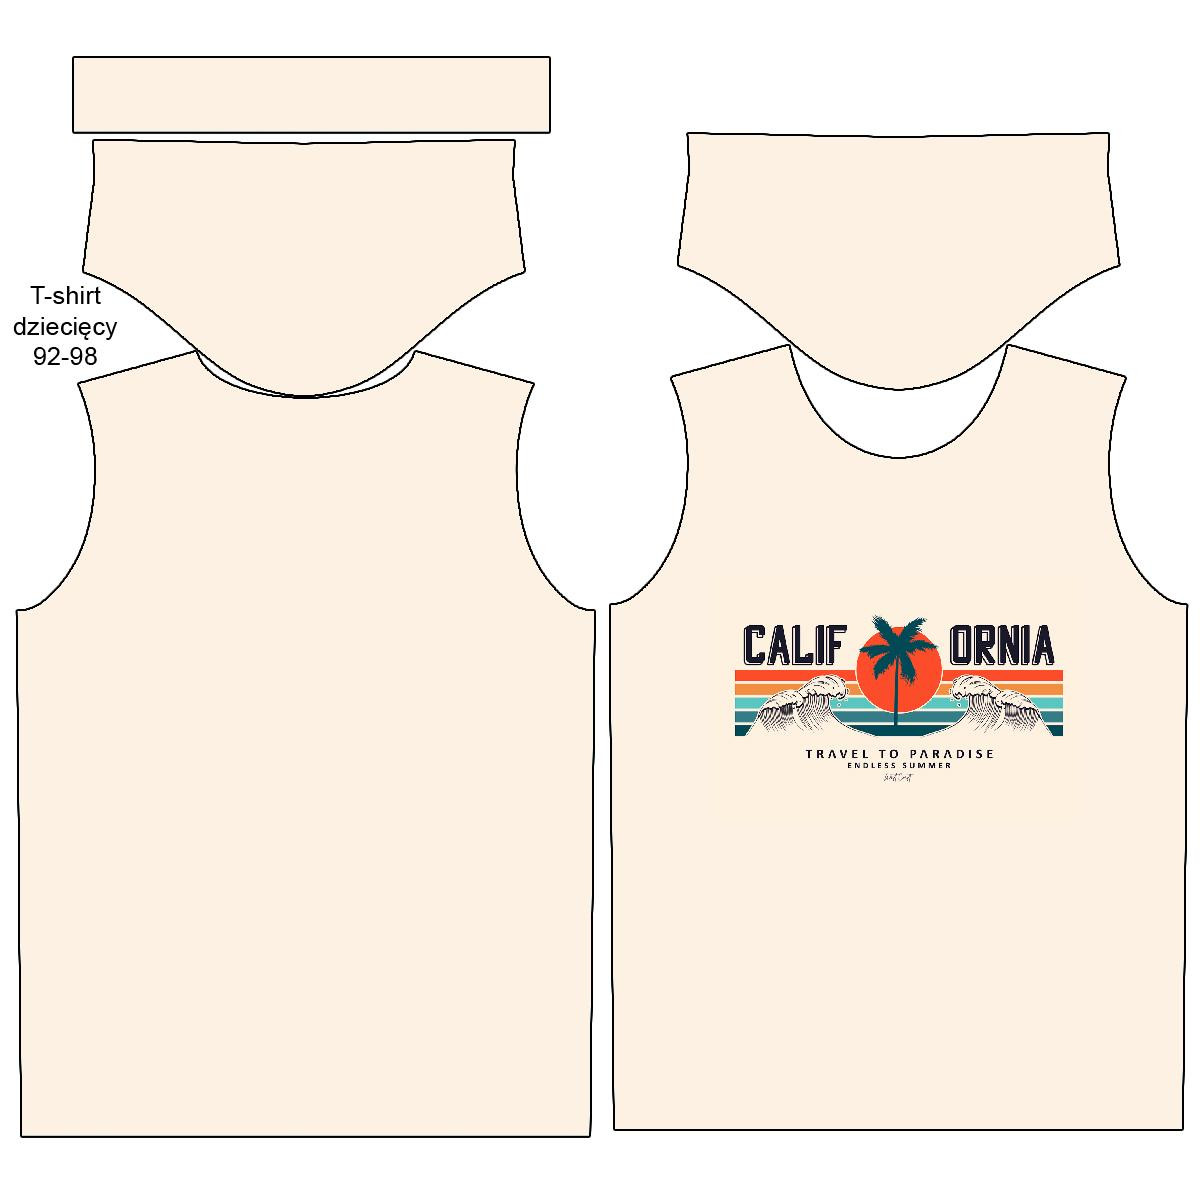 T-SHIRT DZIECIĘCY - CALIFORNIA wz. 1 / beżowy - single jersey